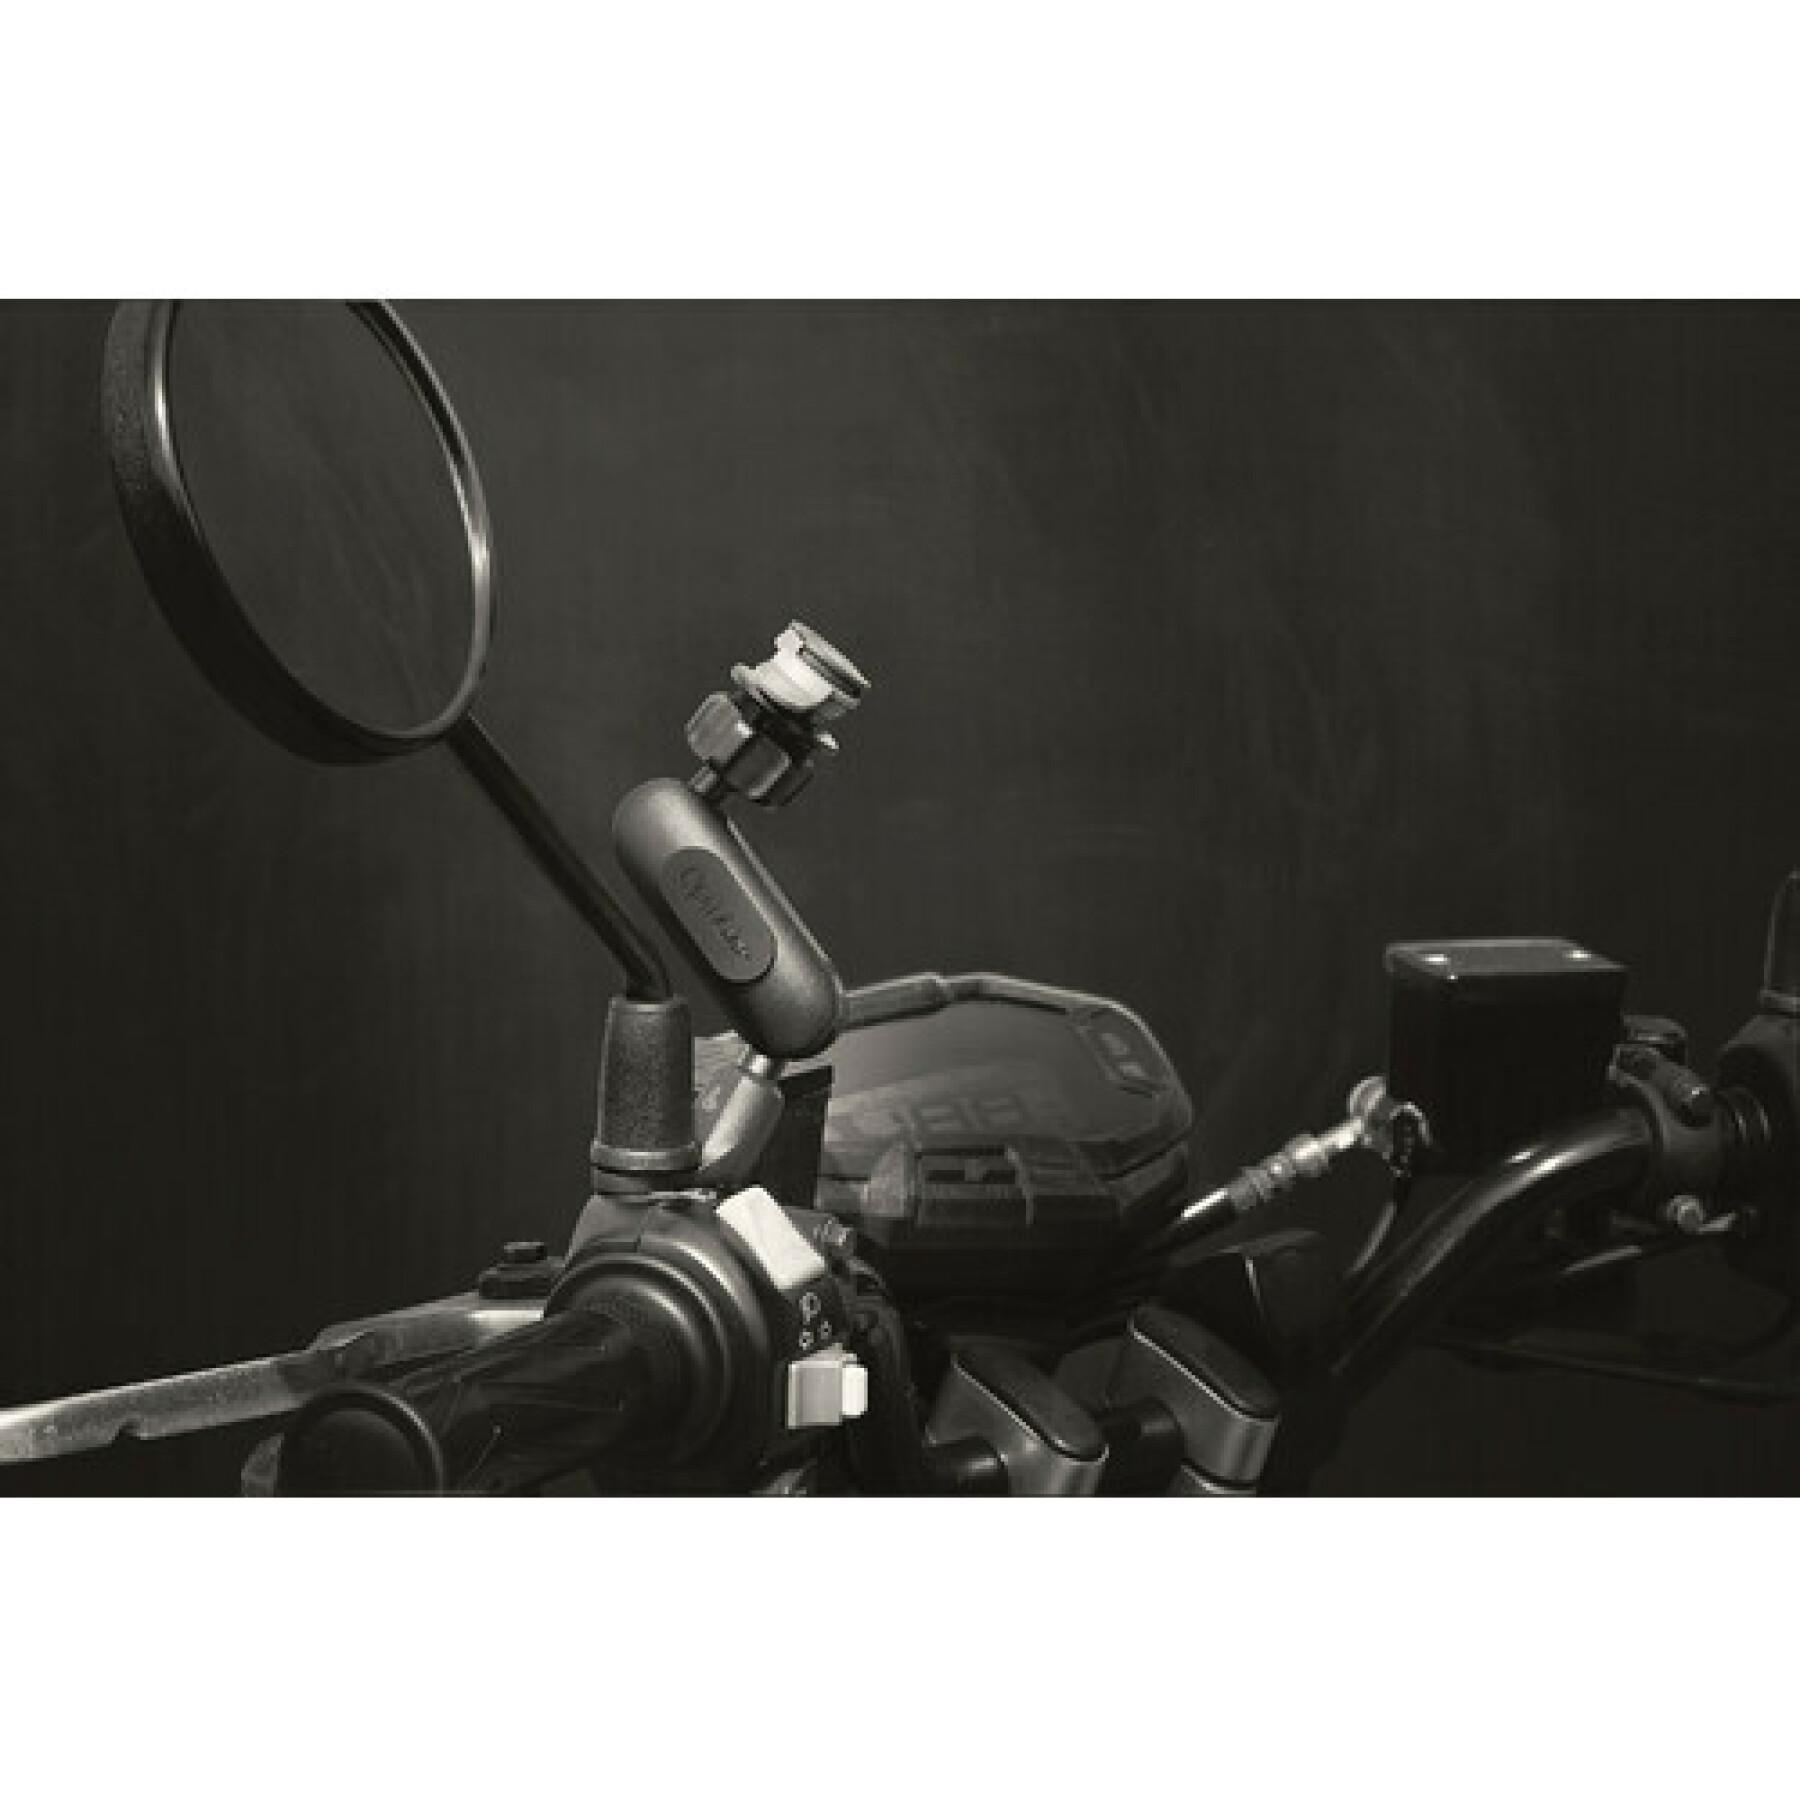 Specific fixation for mirrors or screws Optiline Titan Opti Pole Orbit